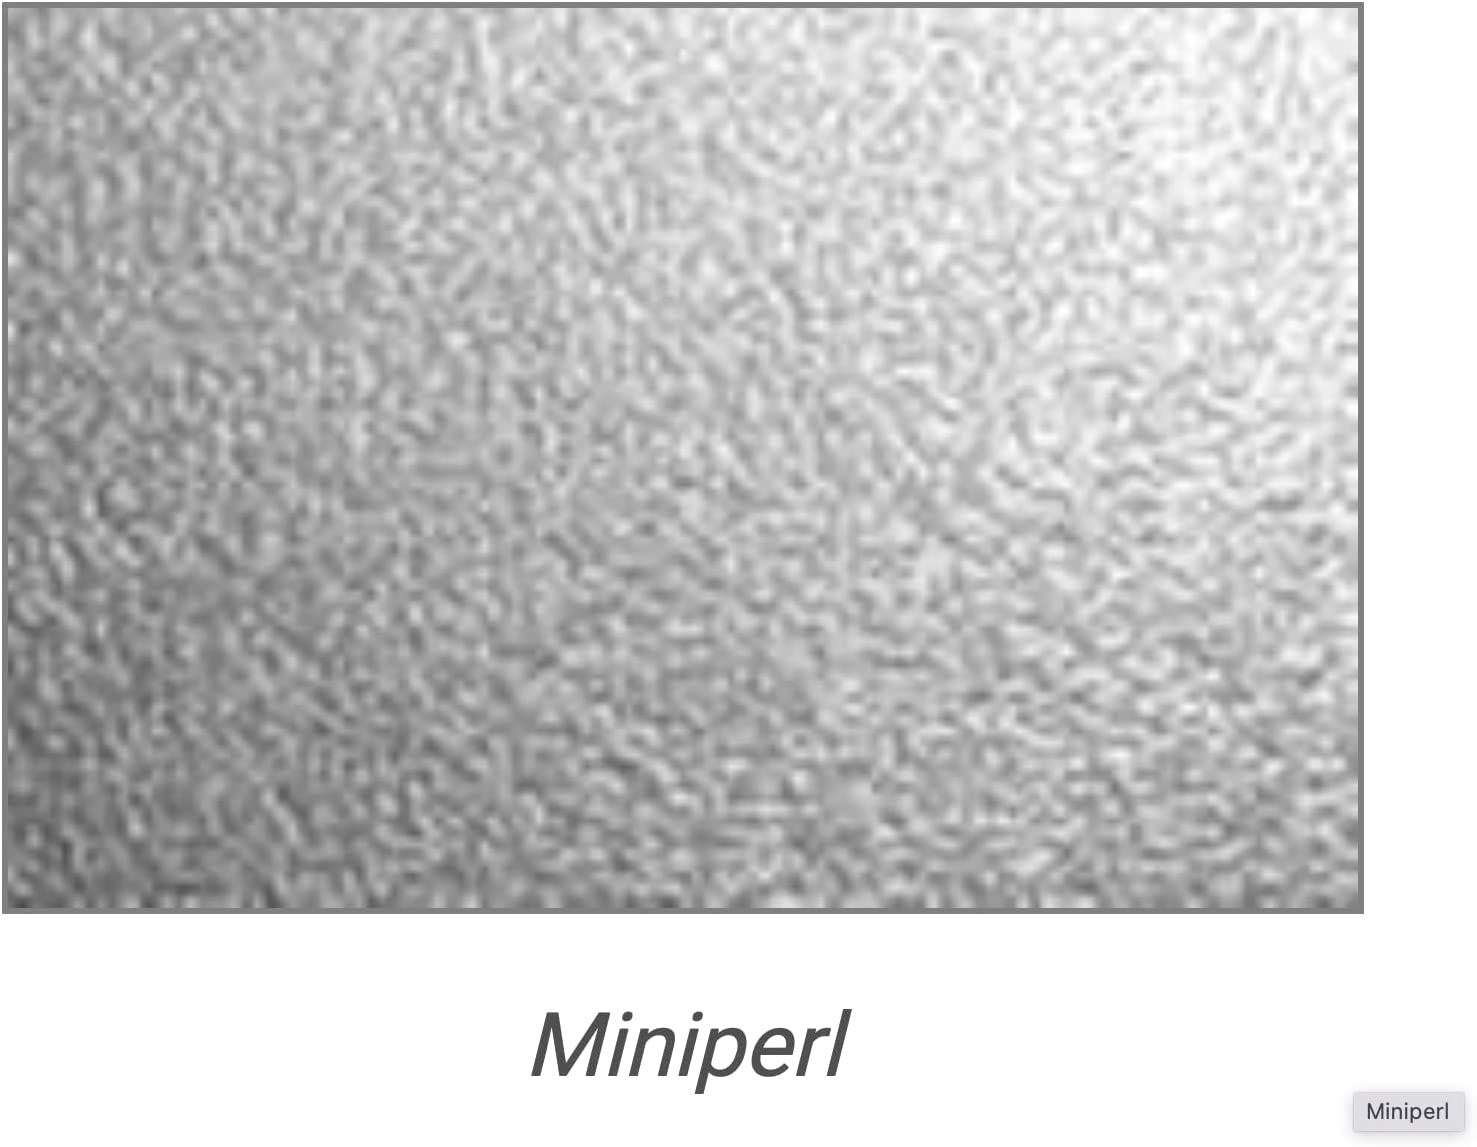 Geschirrspülerfront 565 x 594 mm, Weiss Frontblende Tür 19mm voll-, teilintegriert oder n. Maß - Tischlerware Qualität aus Deutschland